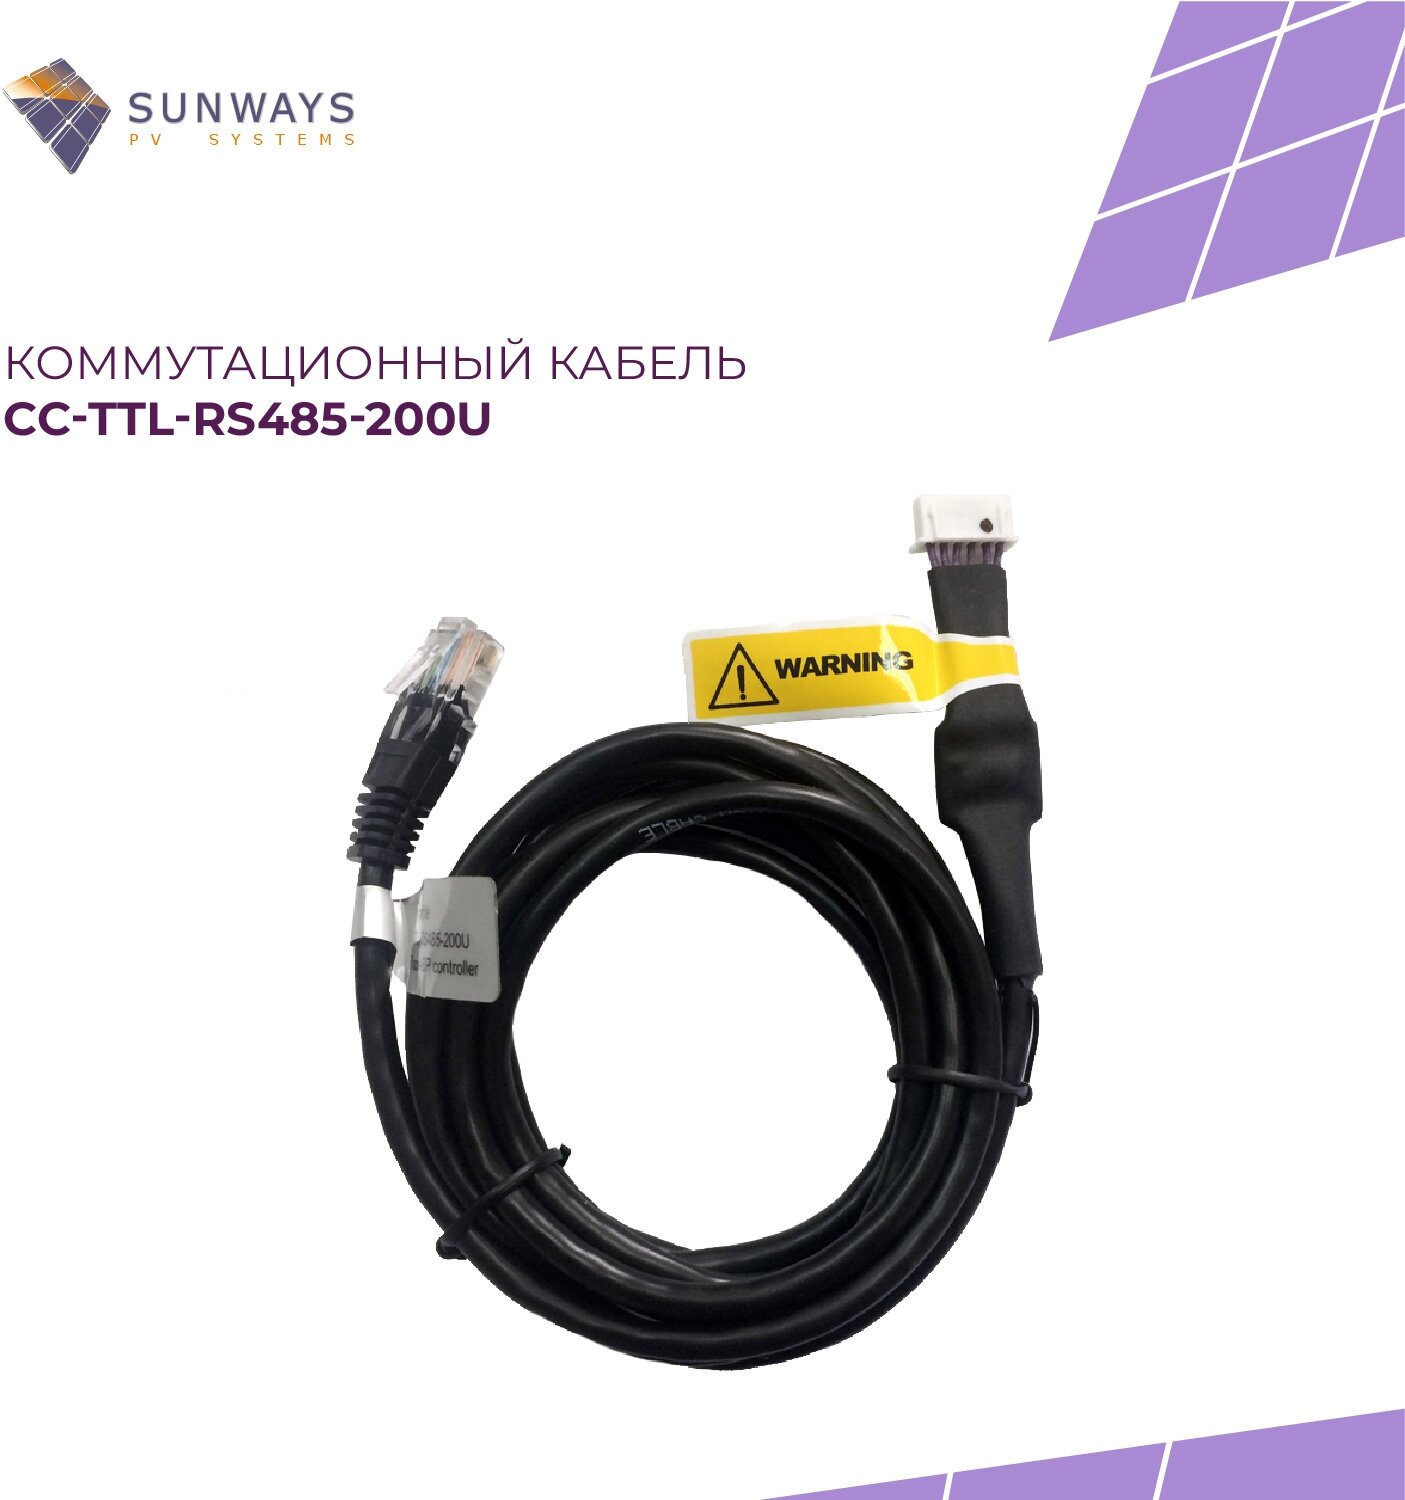 Коммутационный кабель CC-TTL-RS485-200U